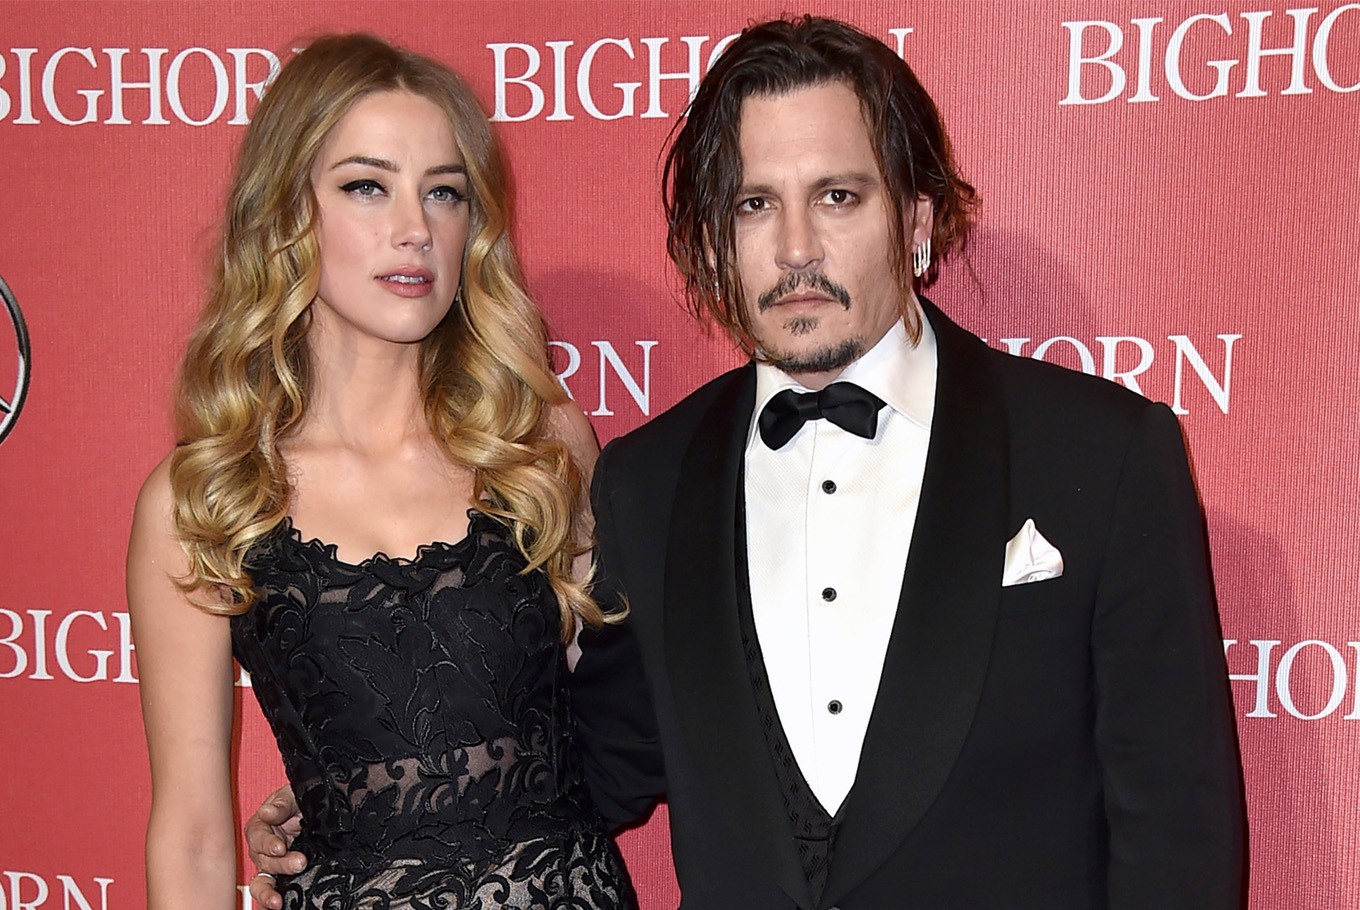 Pourquoi le détective engagé par Amber Heard a pris la défense de Johnny Depp